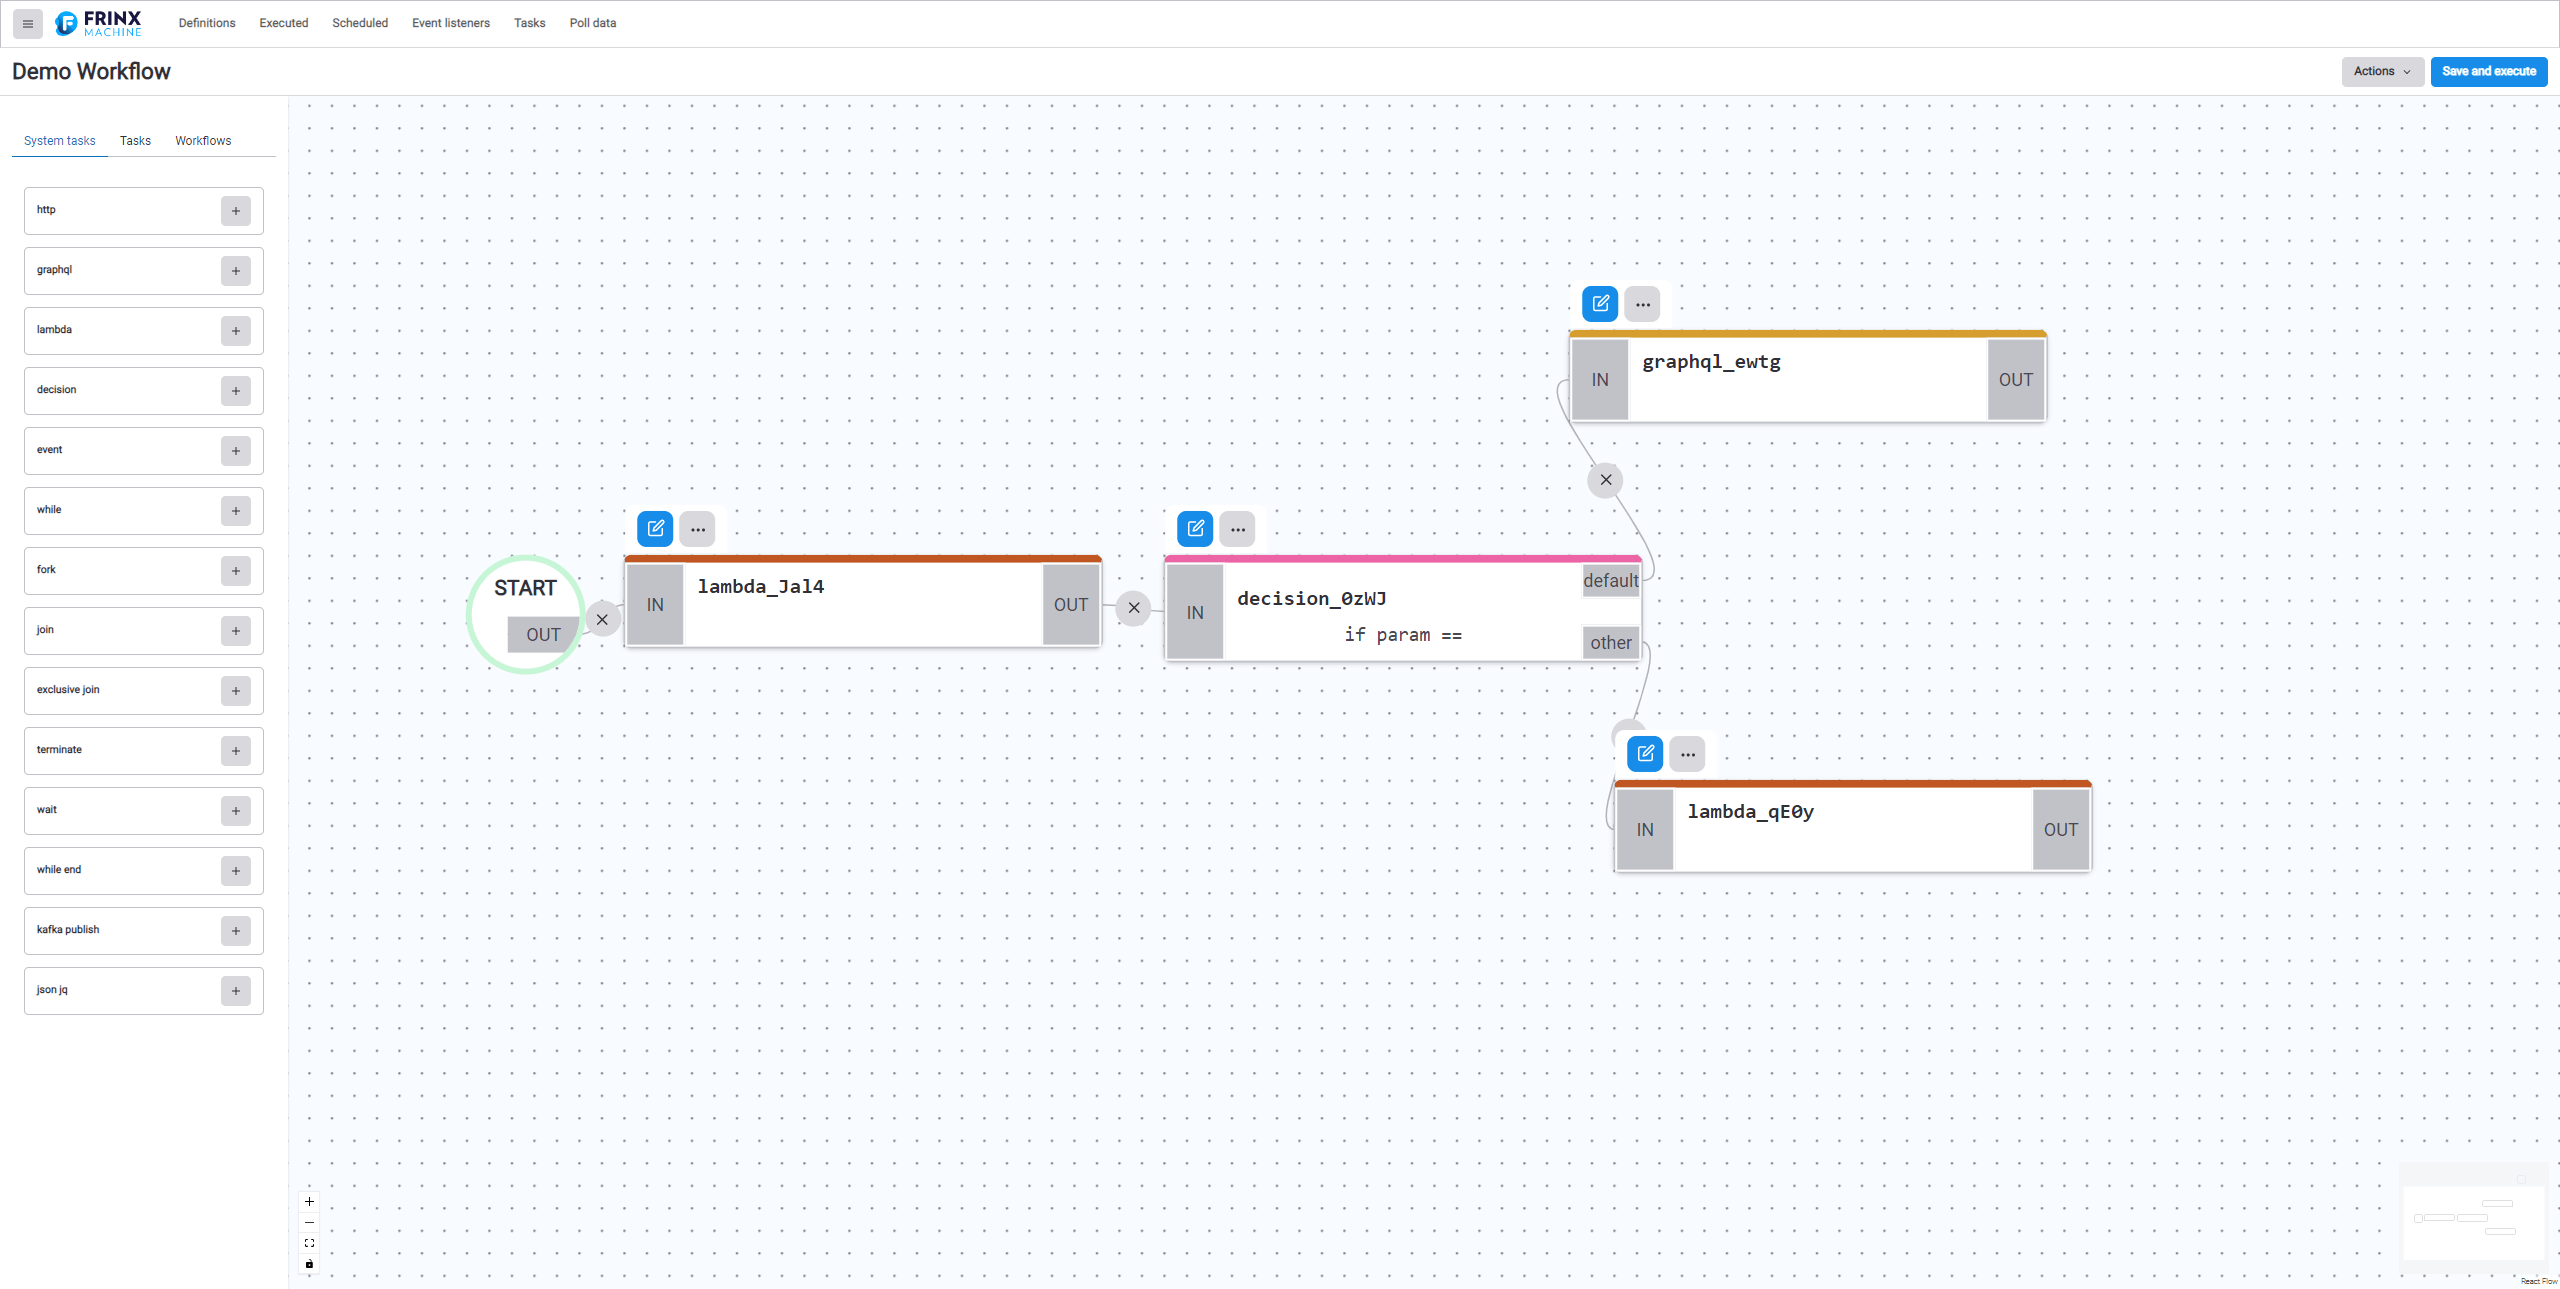 Workflow builder UI - create or update workflow